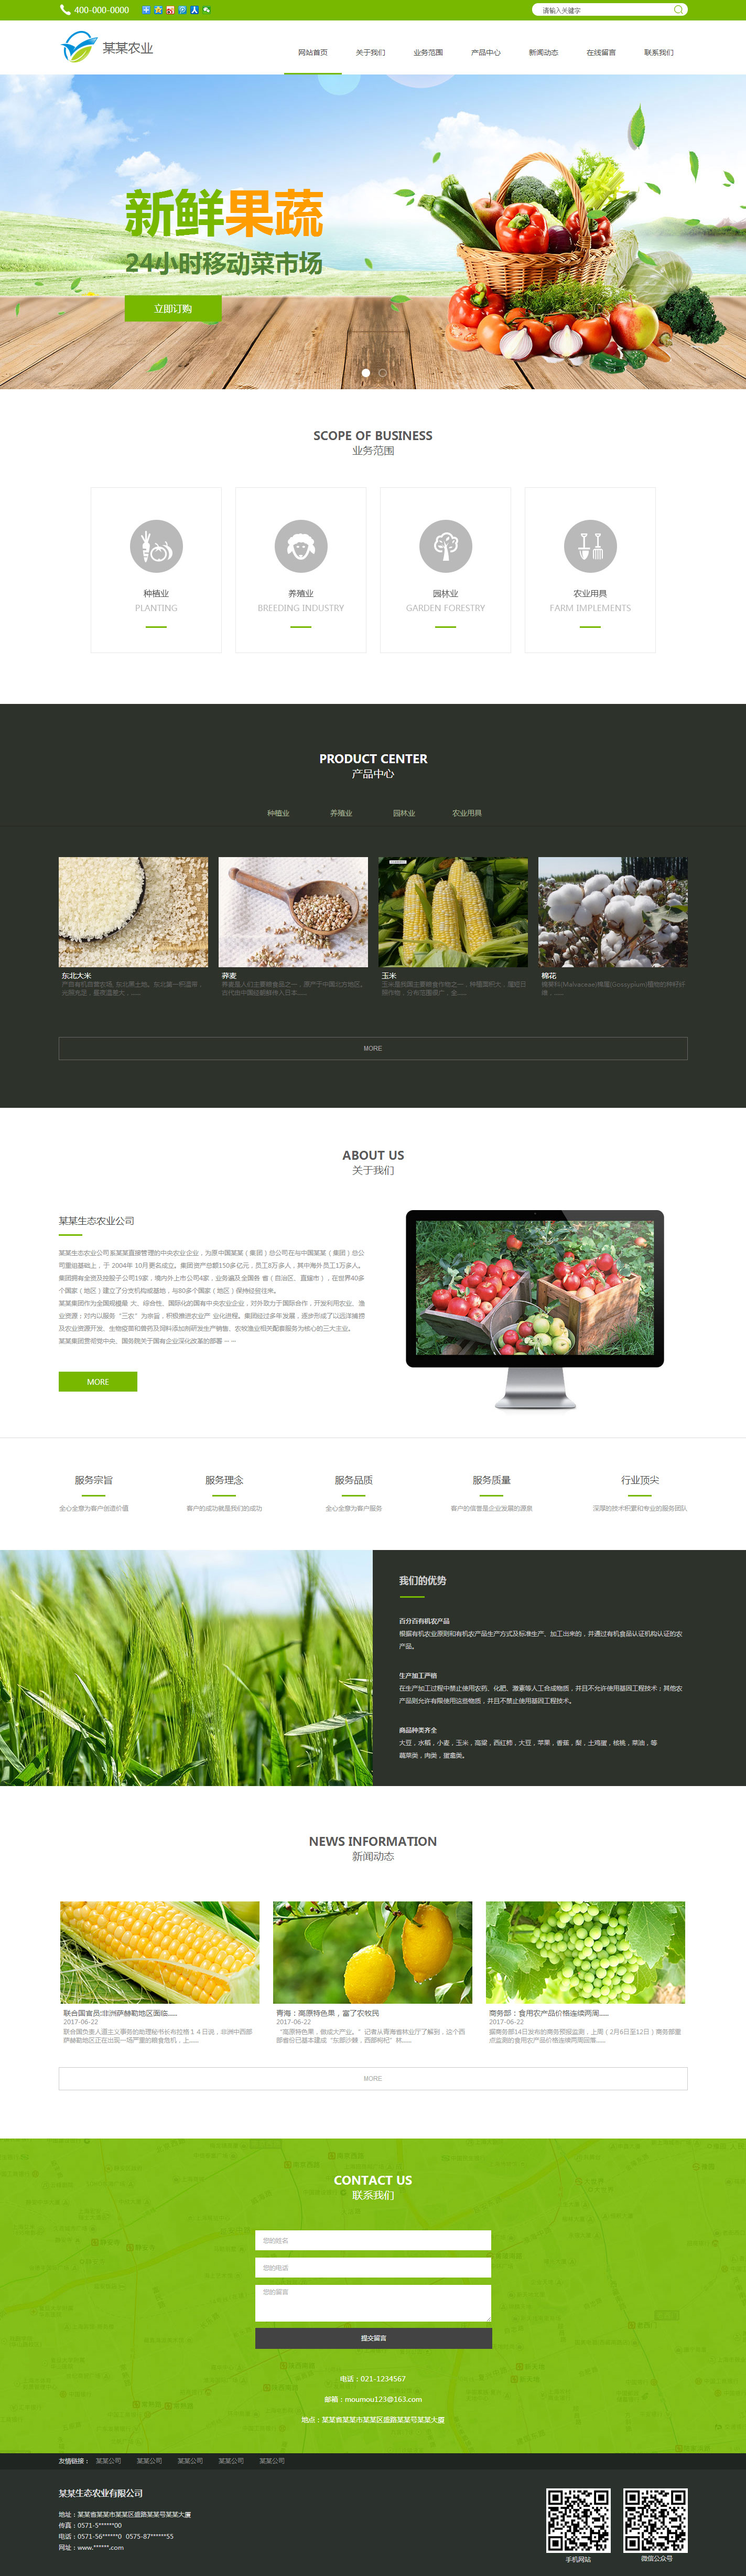 企业网站精美模板-agriculture-1149855